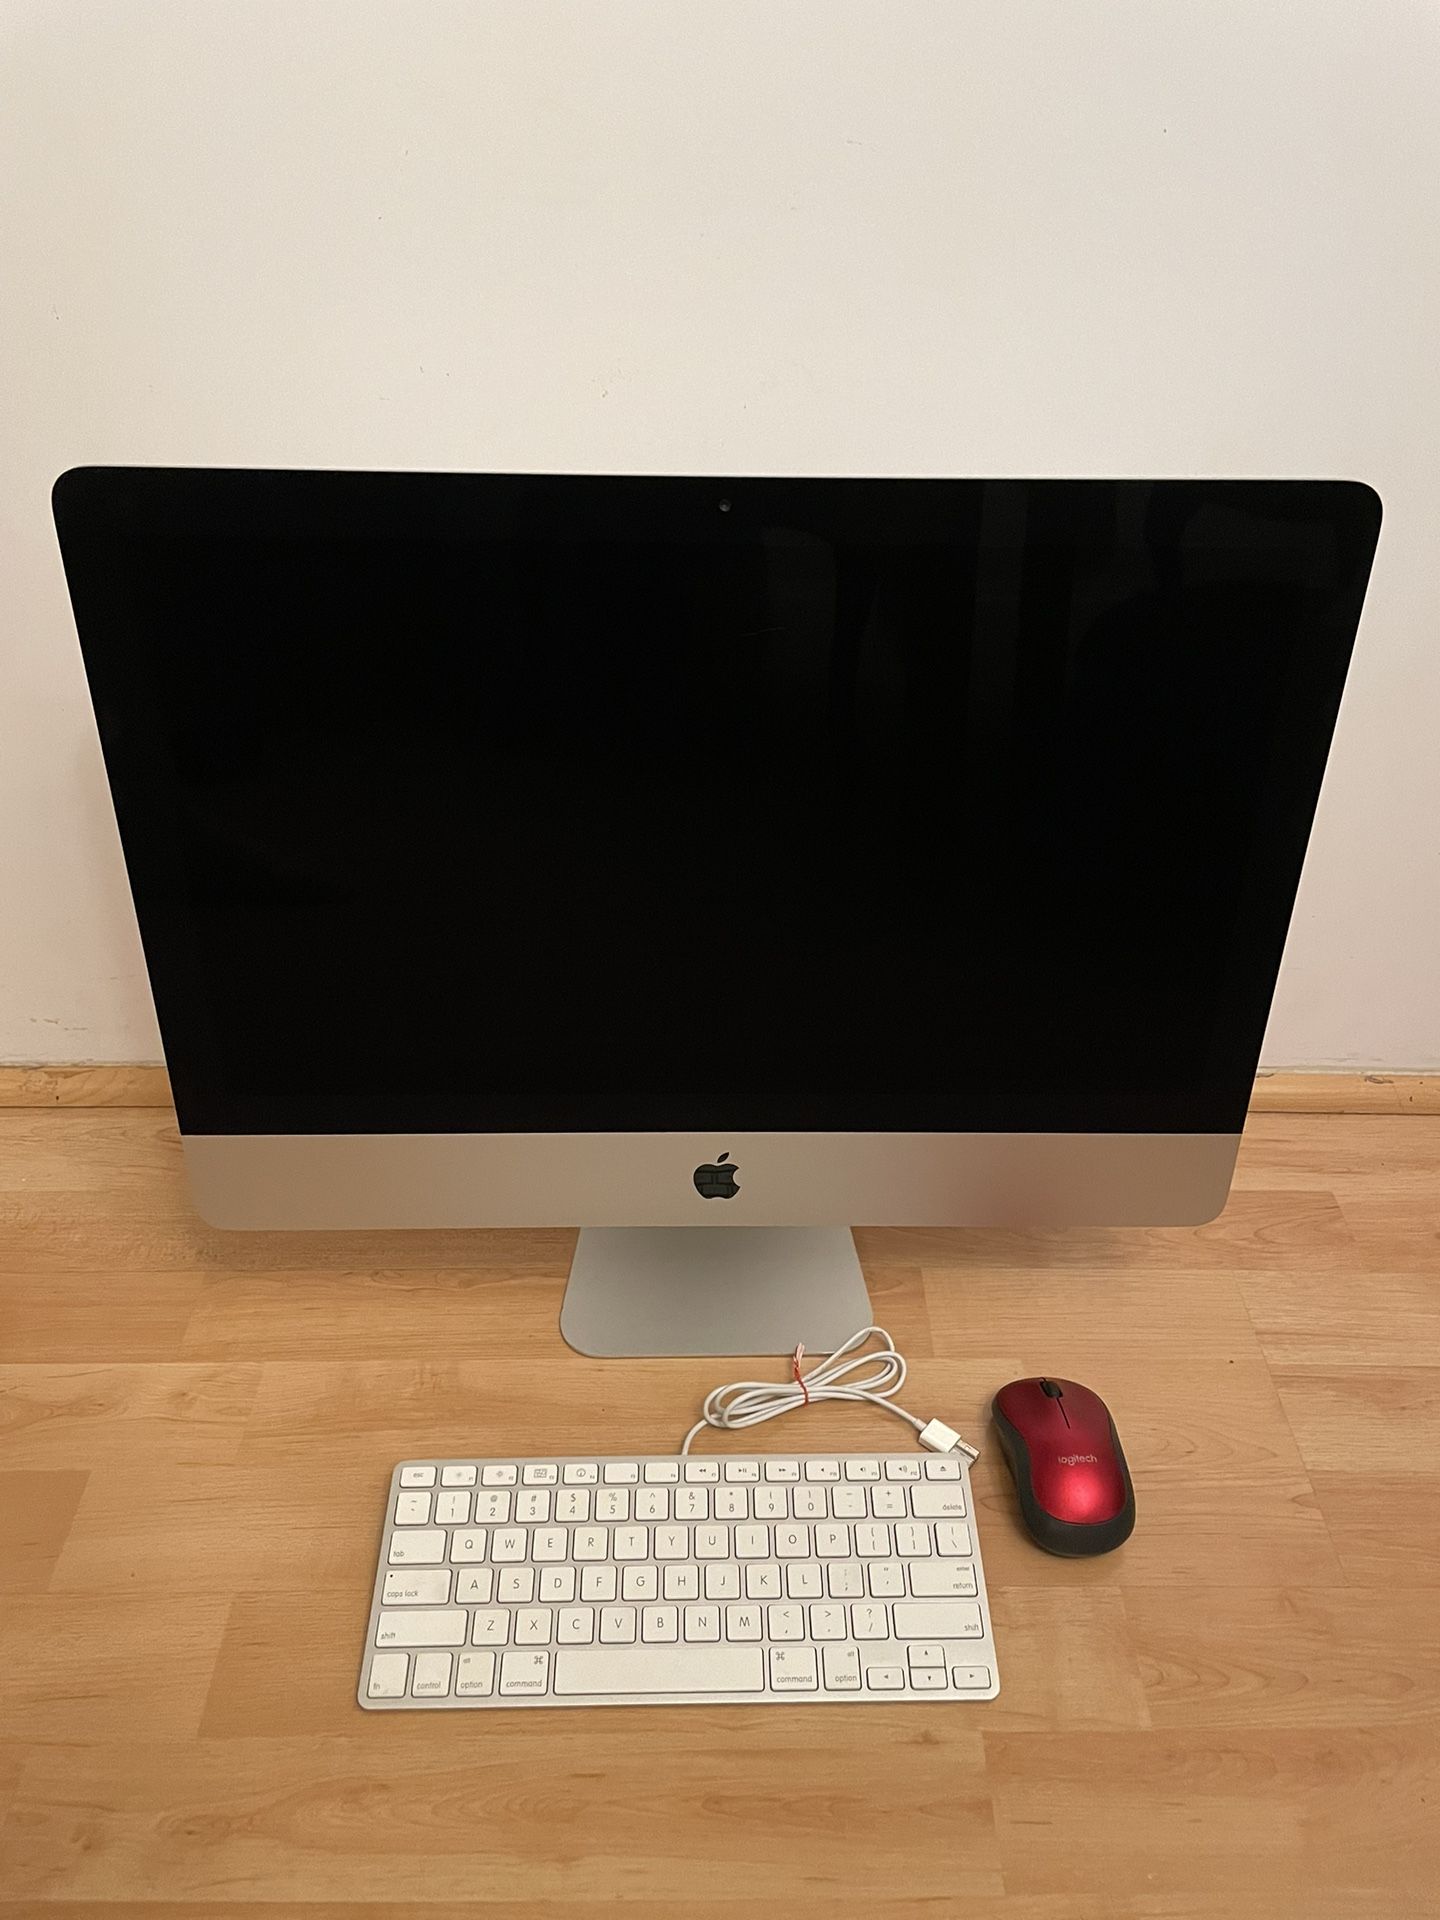 Apple iMac Desktop Computer (Late 2012)